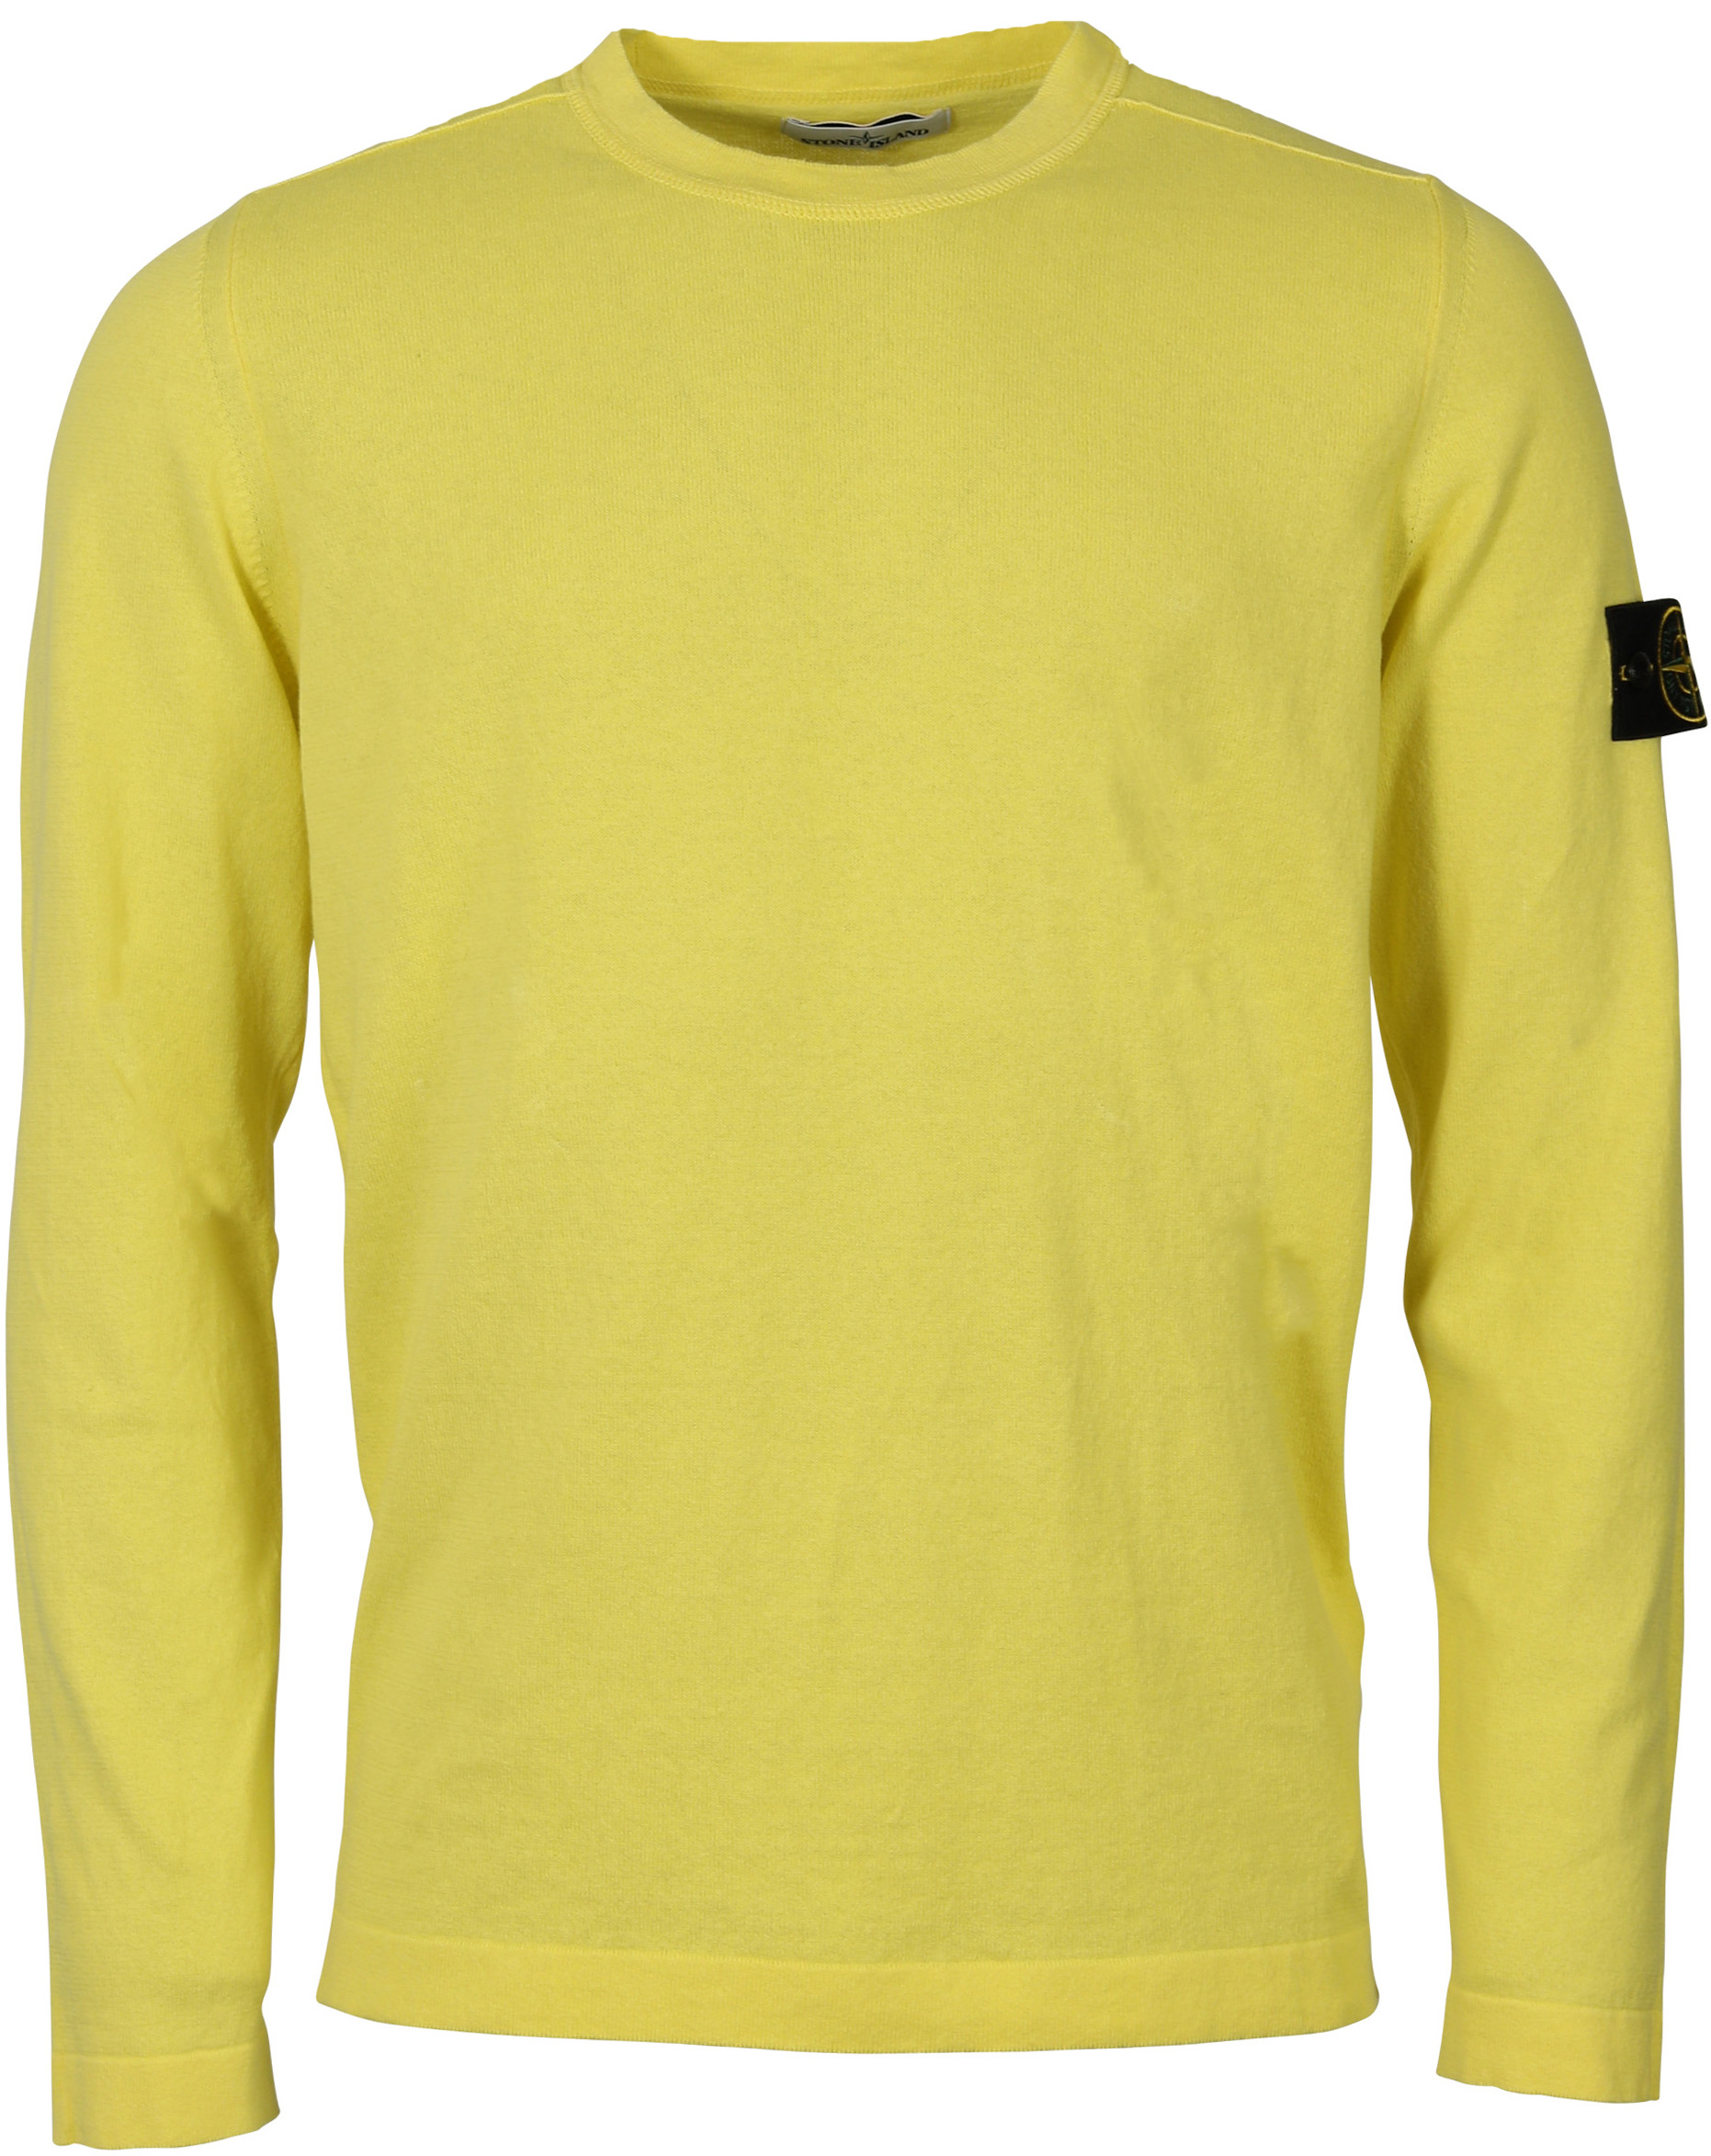 Stone Island Knit Sweater Yellow S